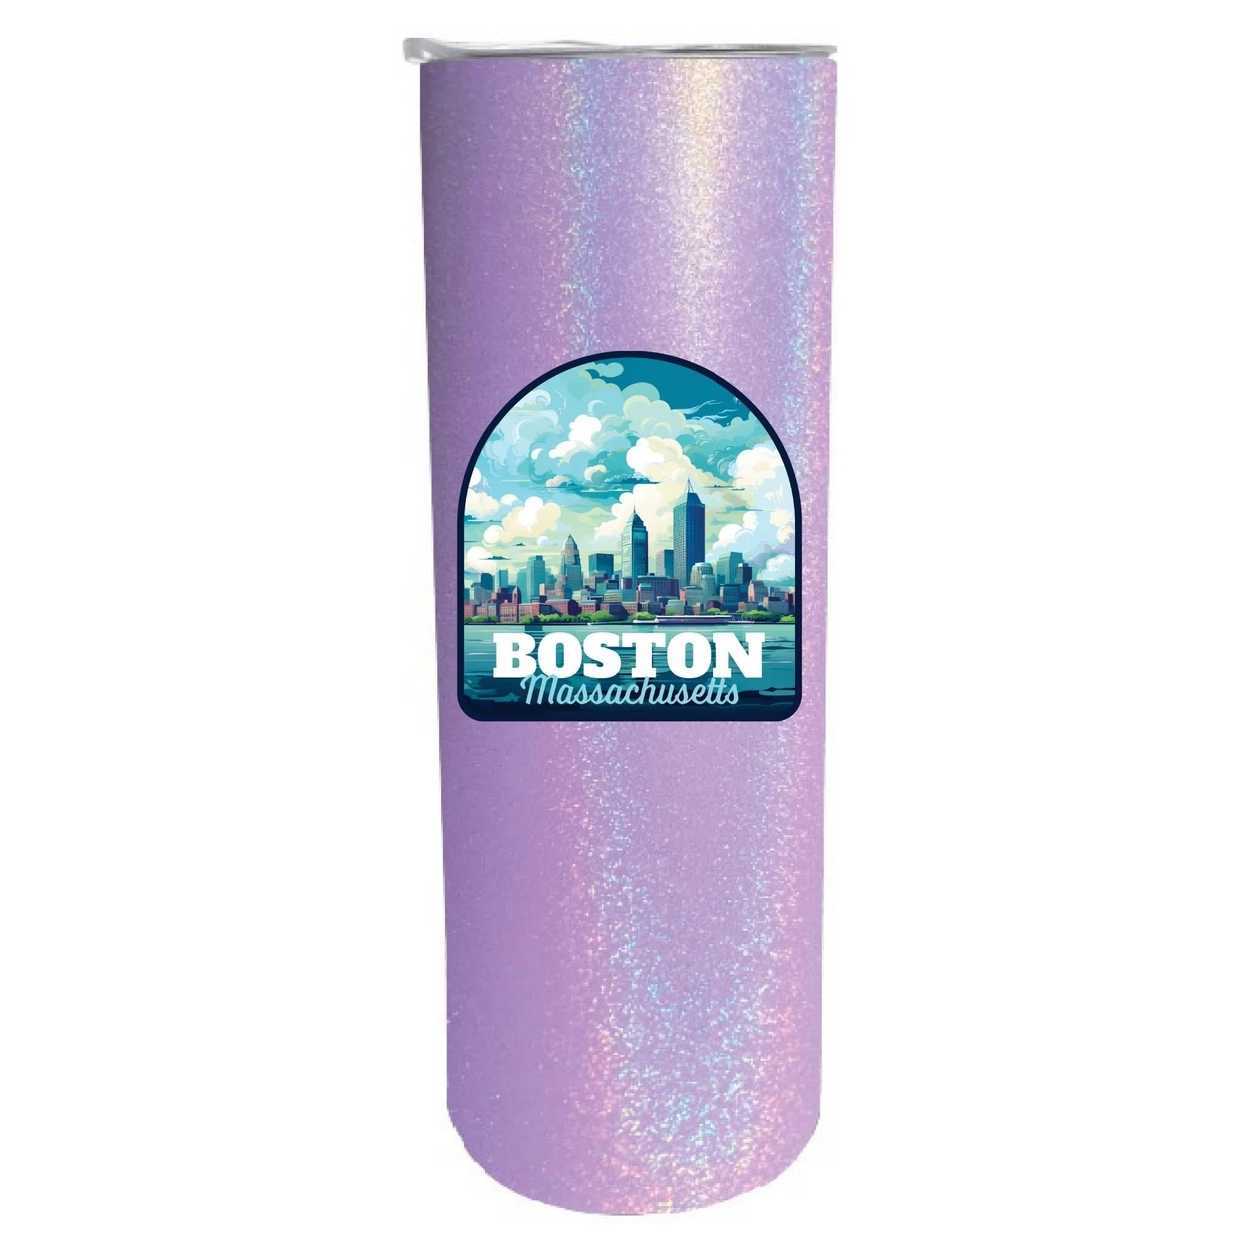 Boston Massachusetts A Souvenir 20 Oz Insulated Skinny Tumbler Glitter - Purple Glitter,,2-Pack